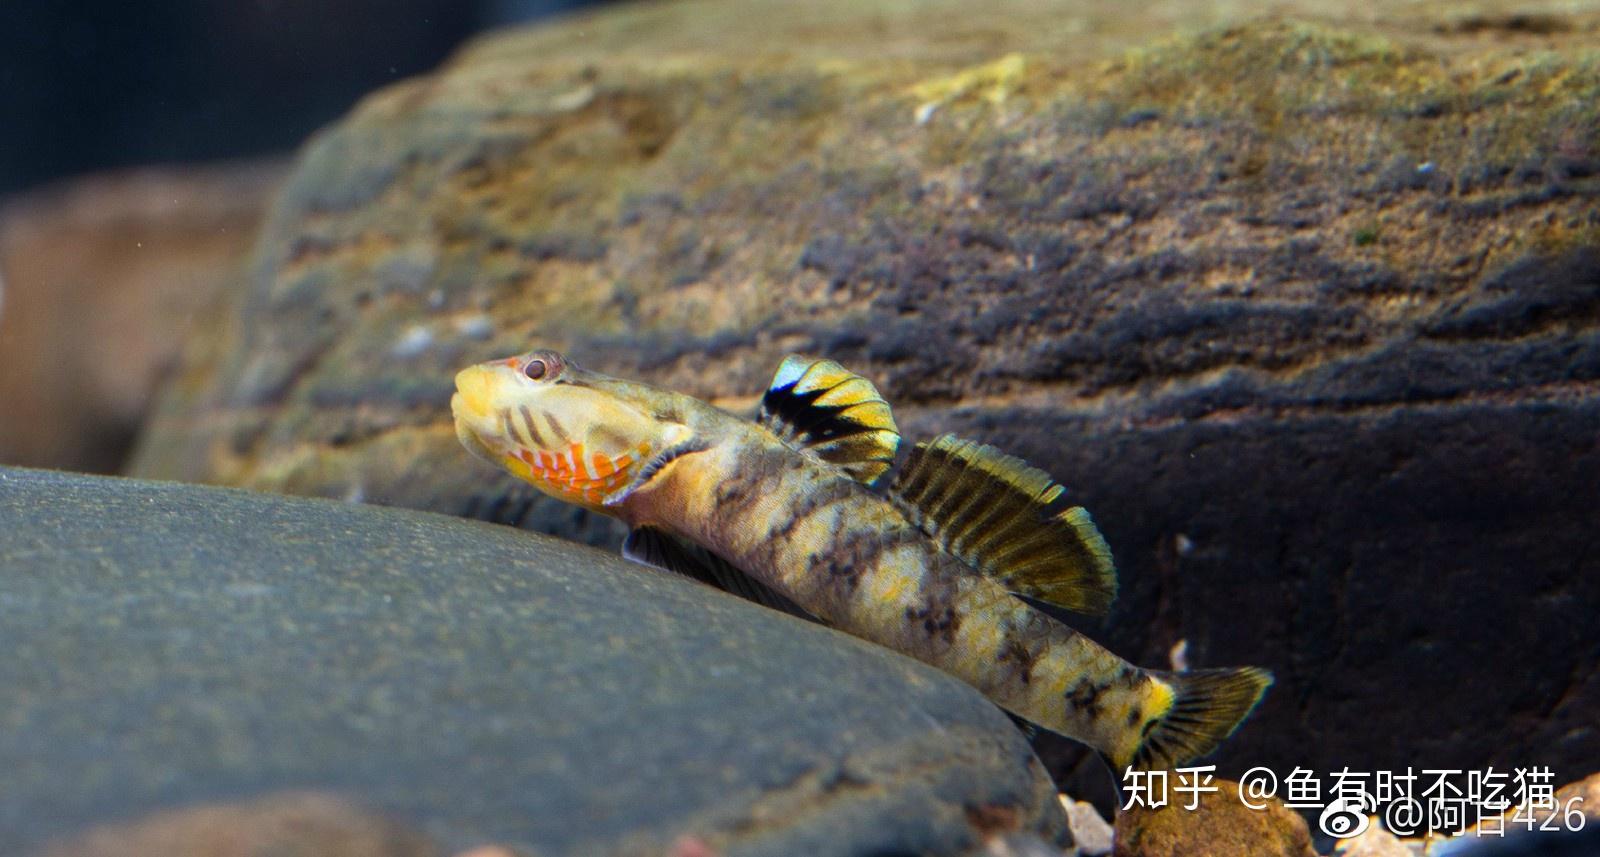 中国原生鱼:吻虾虎鱼图鉴 